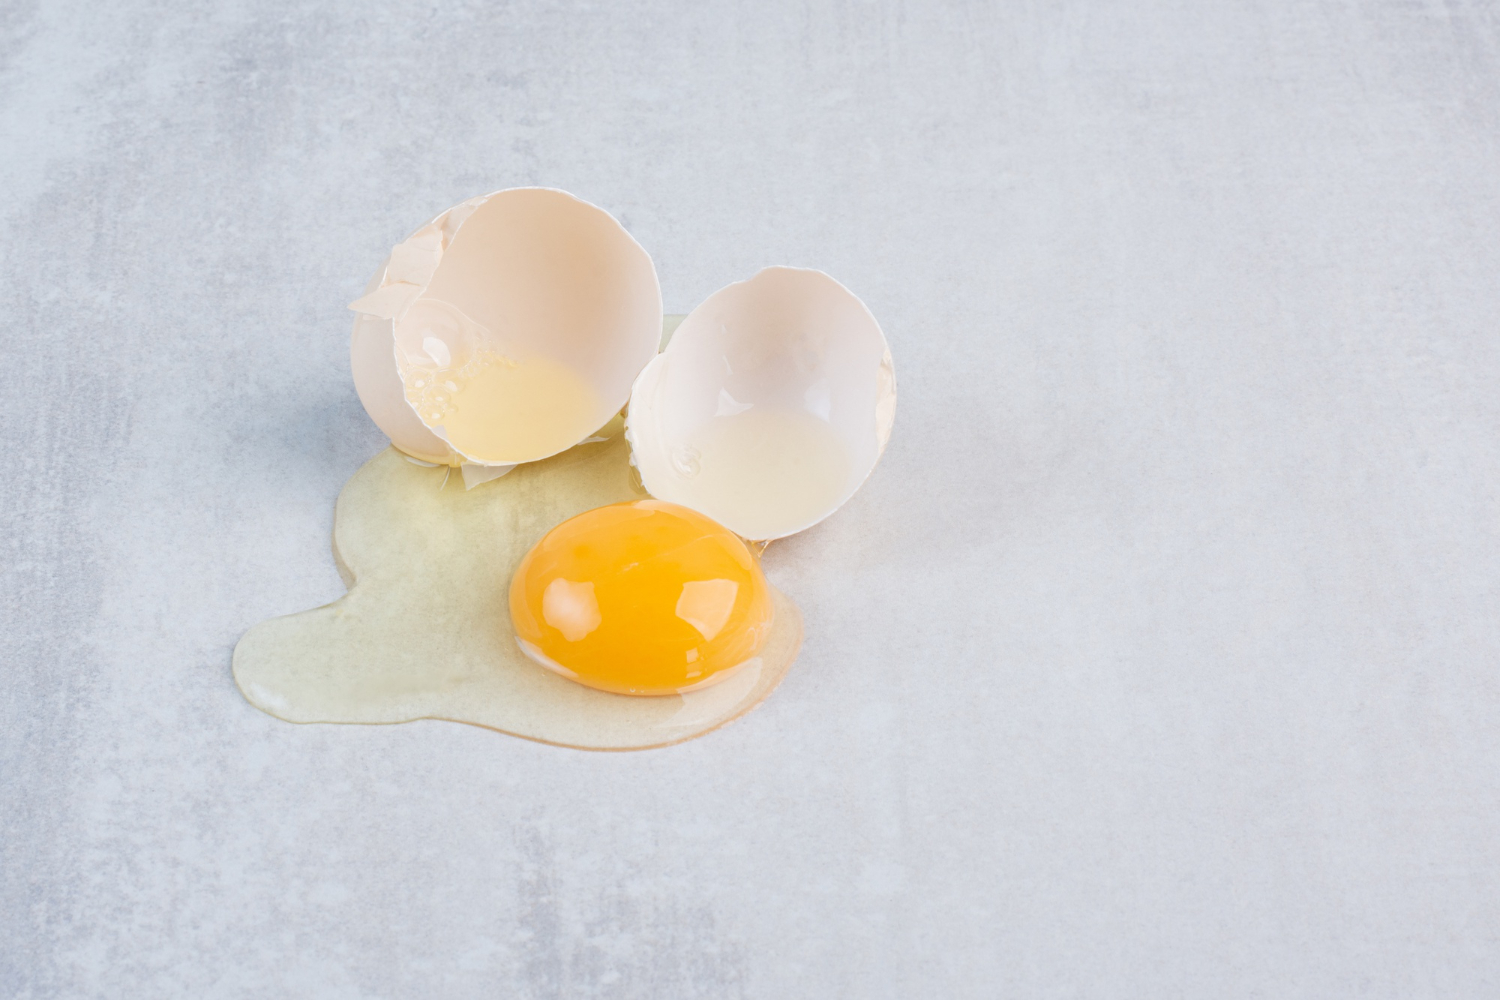 卵の重さを自分で測定するにはどうすればいいですか？